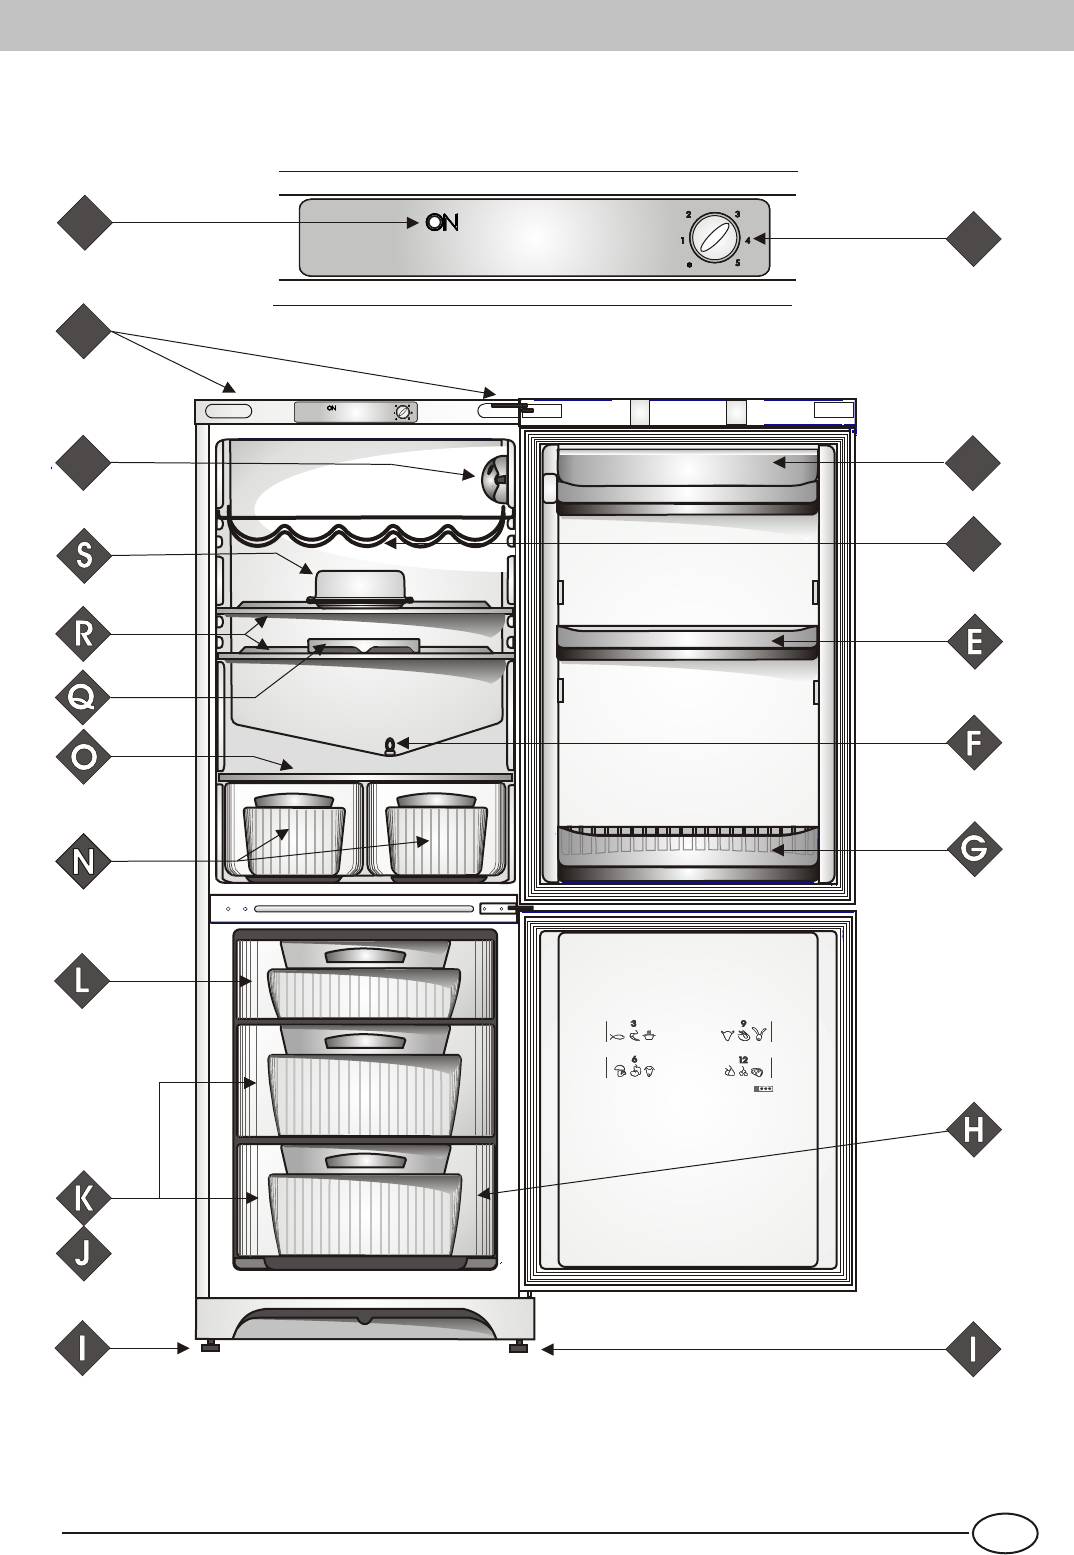 Hotpoint ariston холодильник инструкция. Mba1167s холодильник. Холодильник Ariston Hotpoint 1167. Холодильник Аристон Hotpoint инструкция. Хотпоинт Аристон холодильник инструкция.